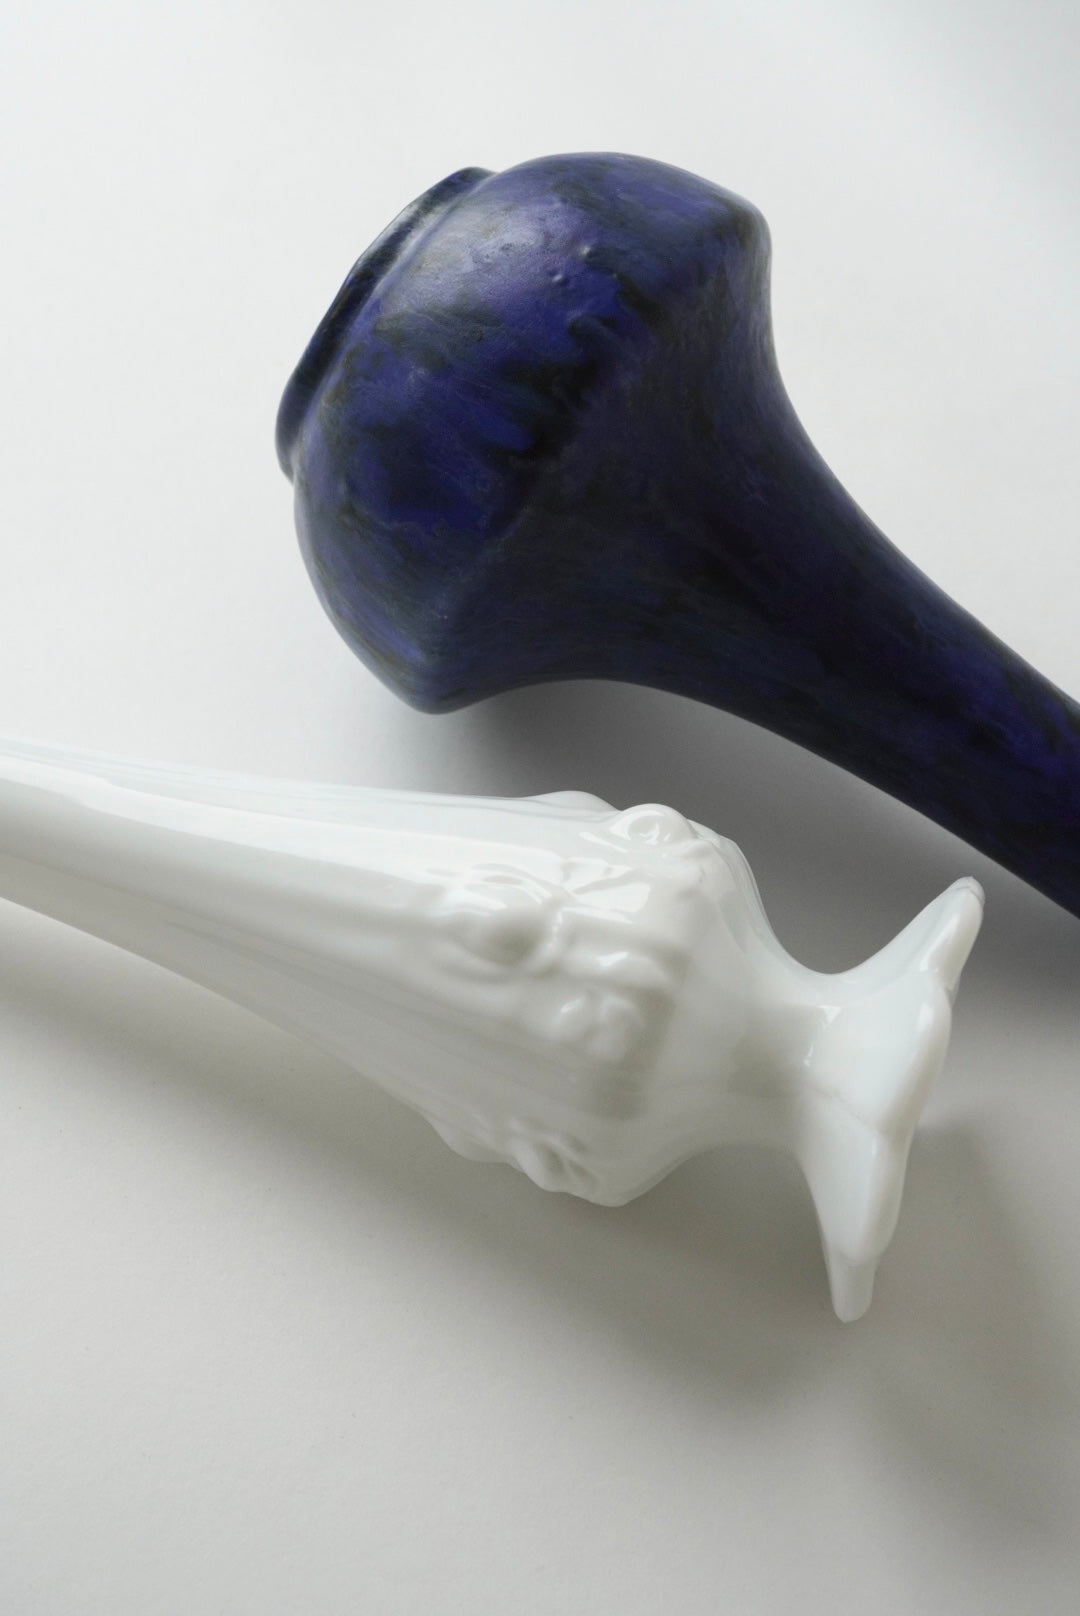 Marbled Blue Vase / Pop-up item @LUMINE SHINJUKU2